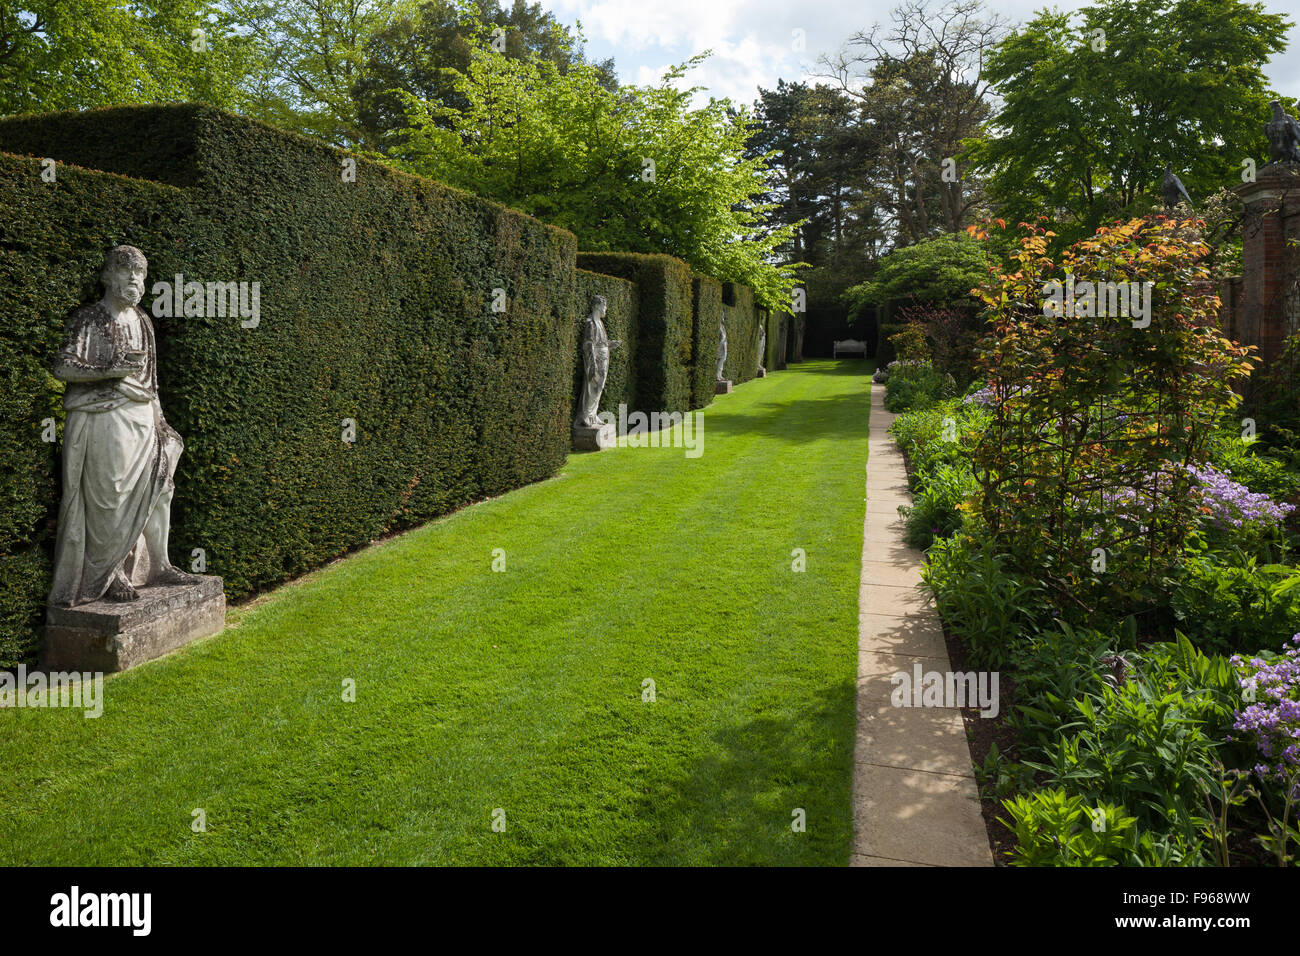 Contemporanea frontiere floreali progettato da Arne Maynard accanto a statue classiche da Scheemaker a Cottesbrooke Hall gardens, Northamptonshire, Inghilterra. Foto Stock